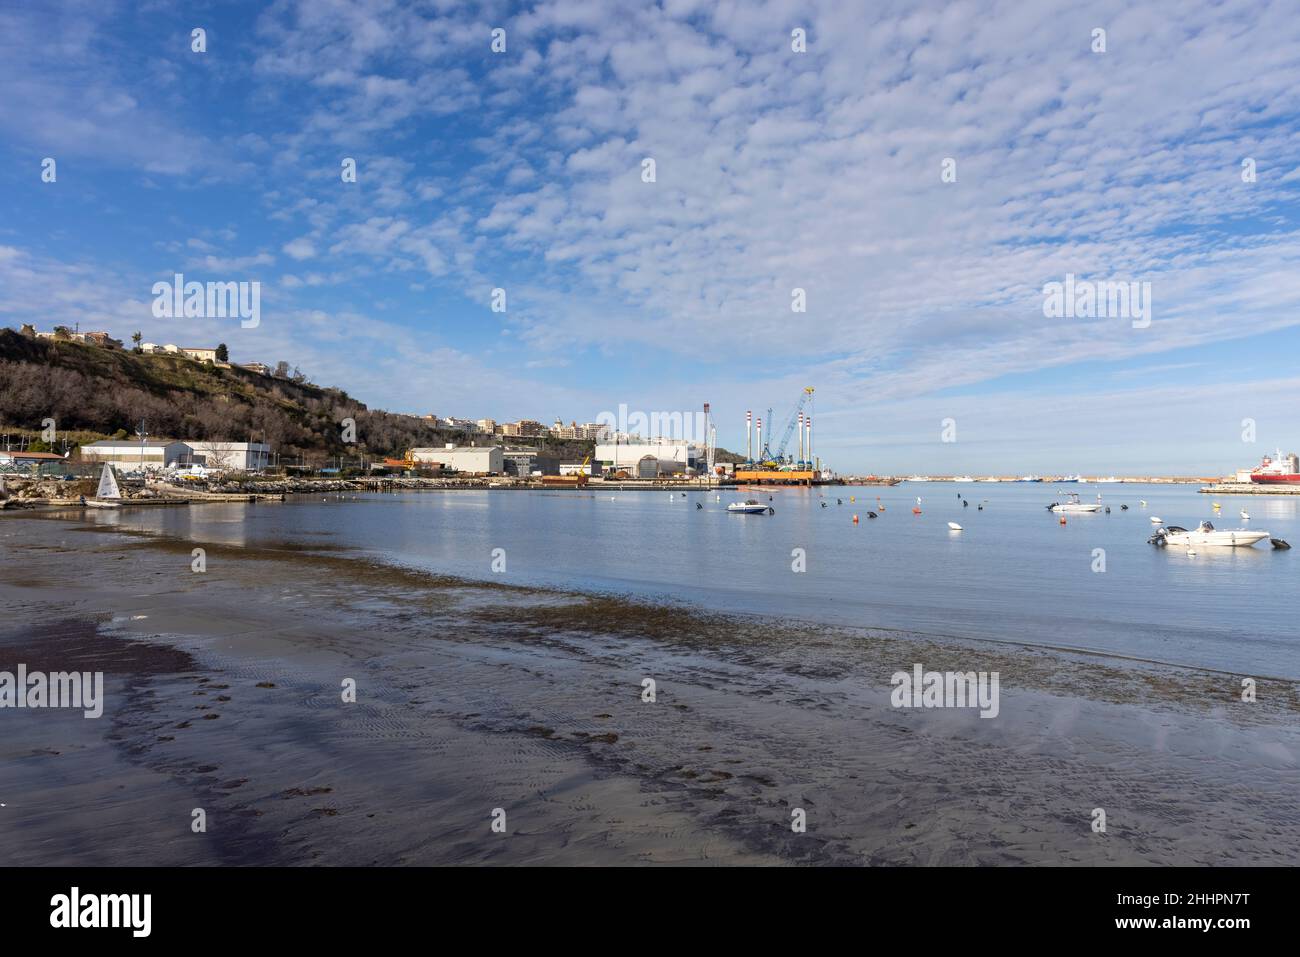 Porto di Ortona in Abruzzo, sul mare Adriatico Foto Stock